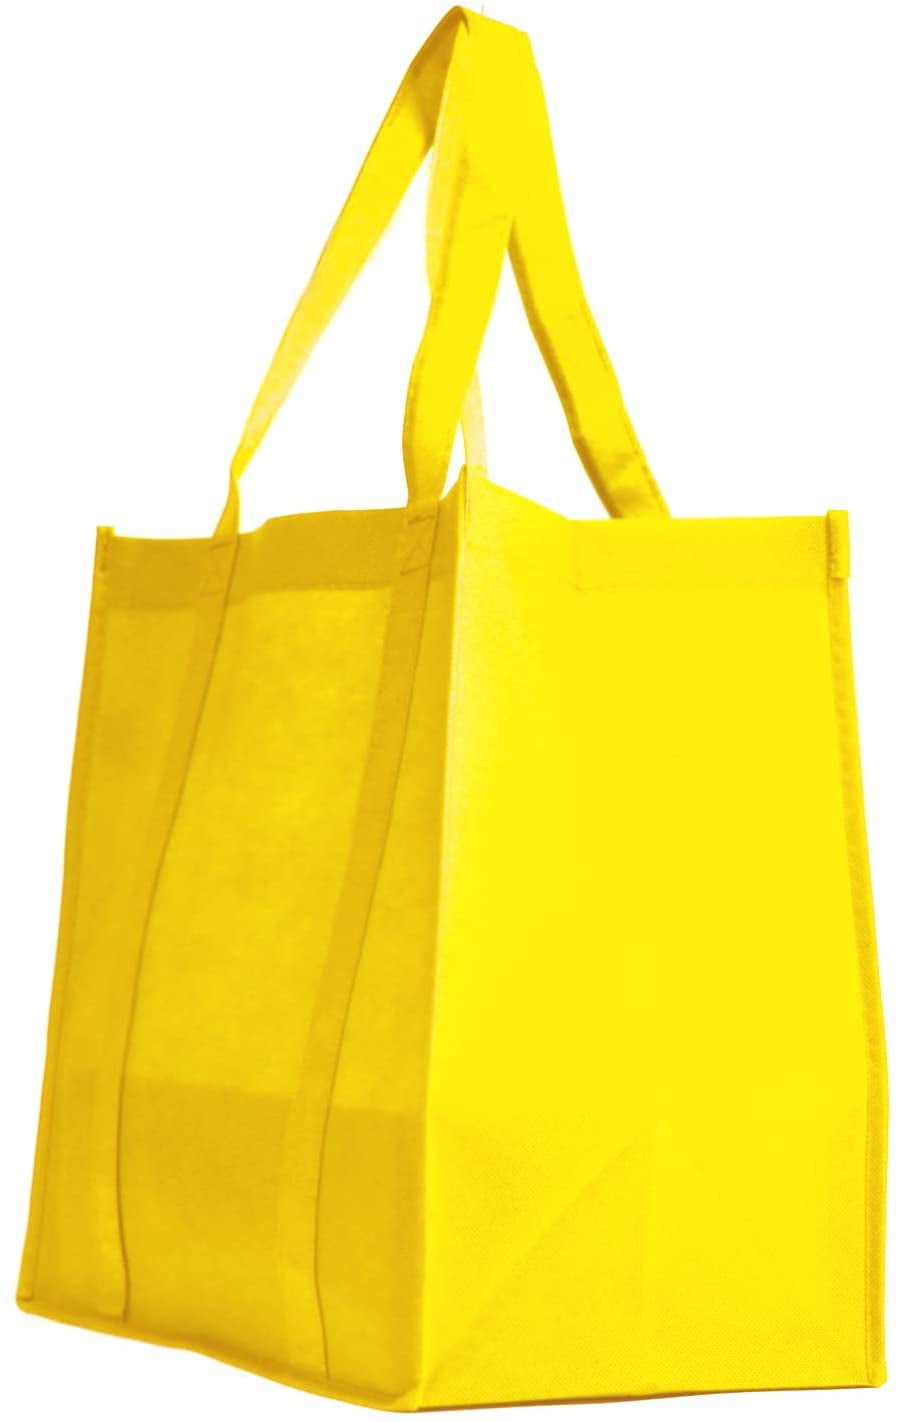 Durable Reusable Shopping Bag Large Strong Tote Woven Design Heavy Duty Fun 